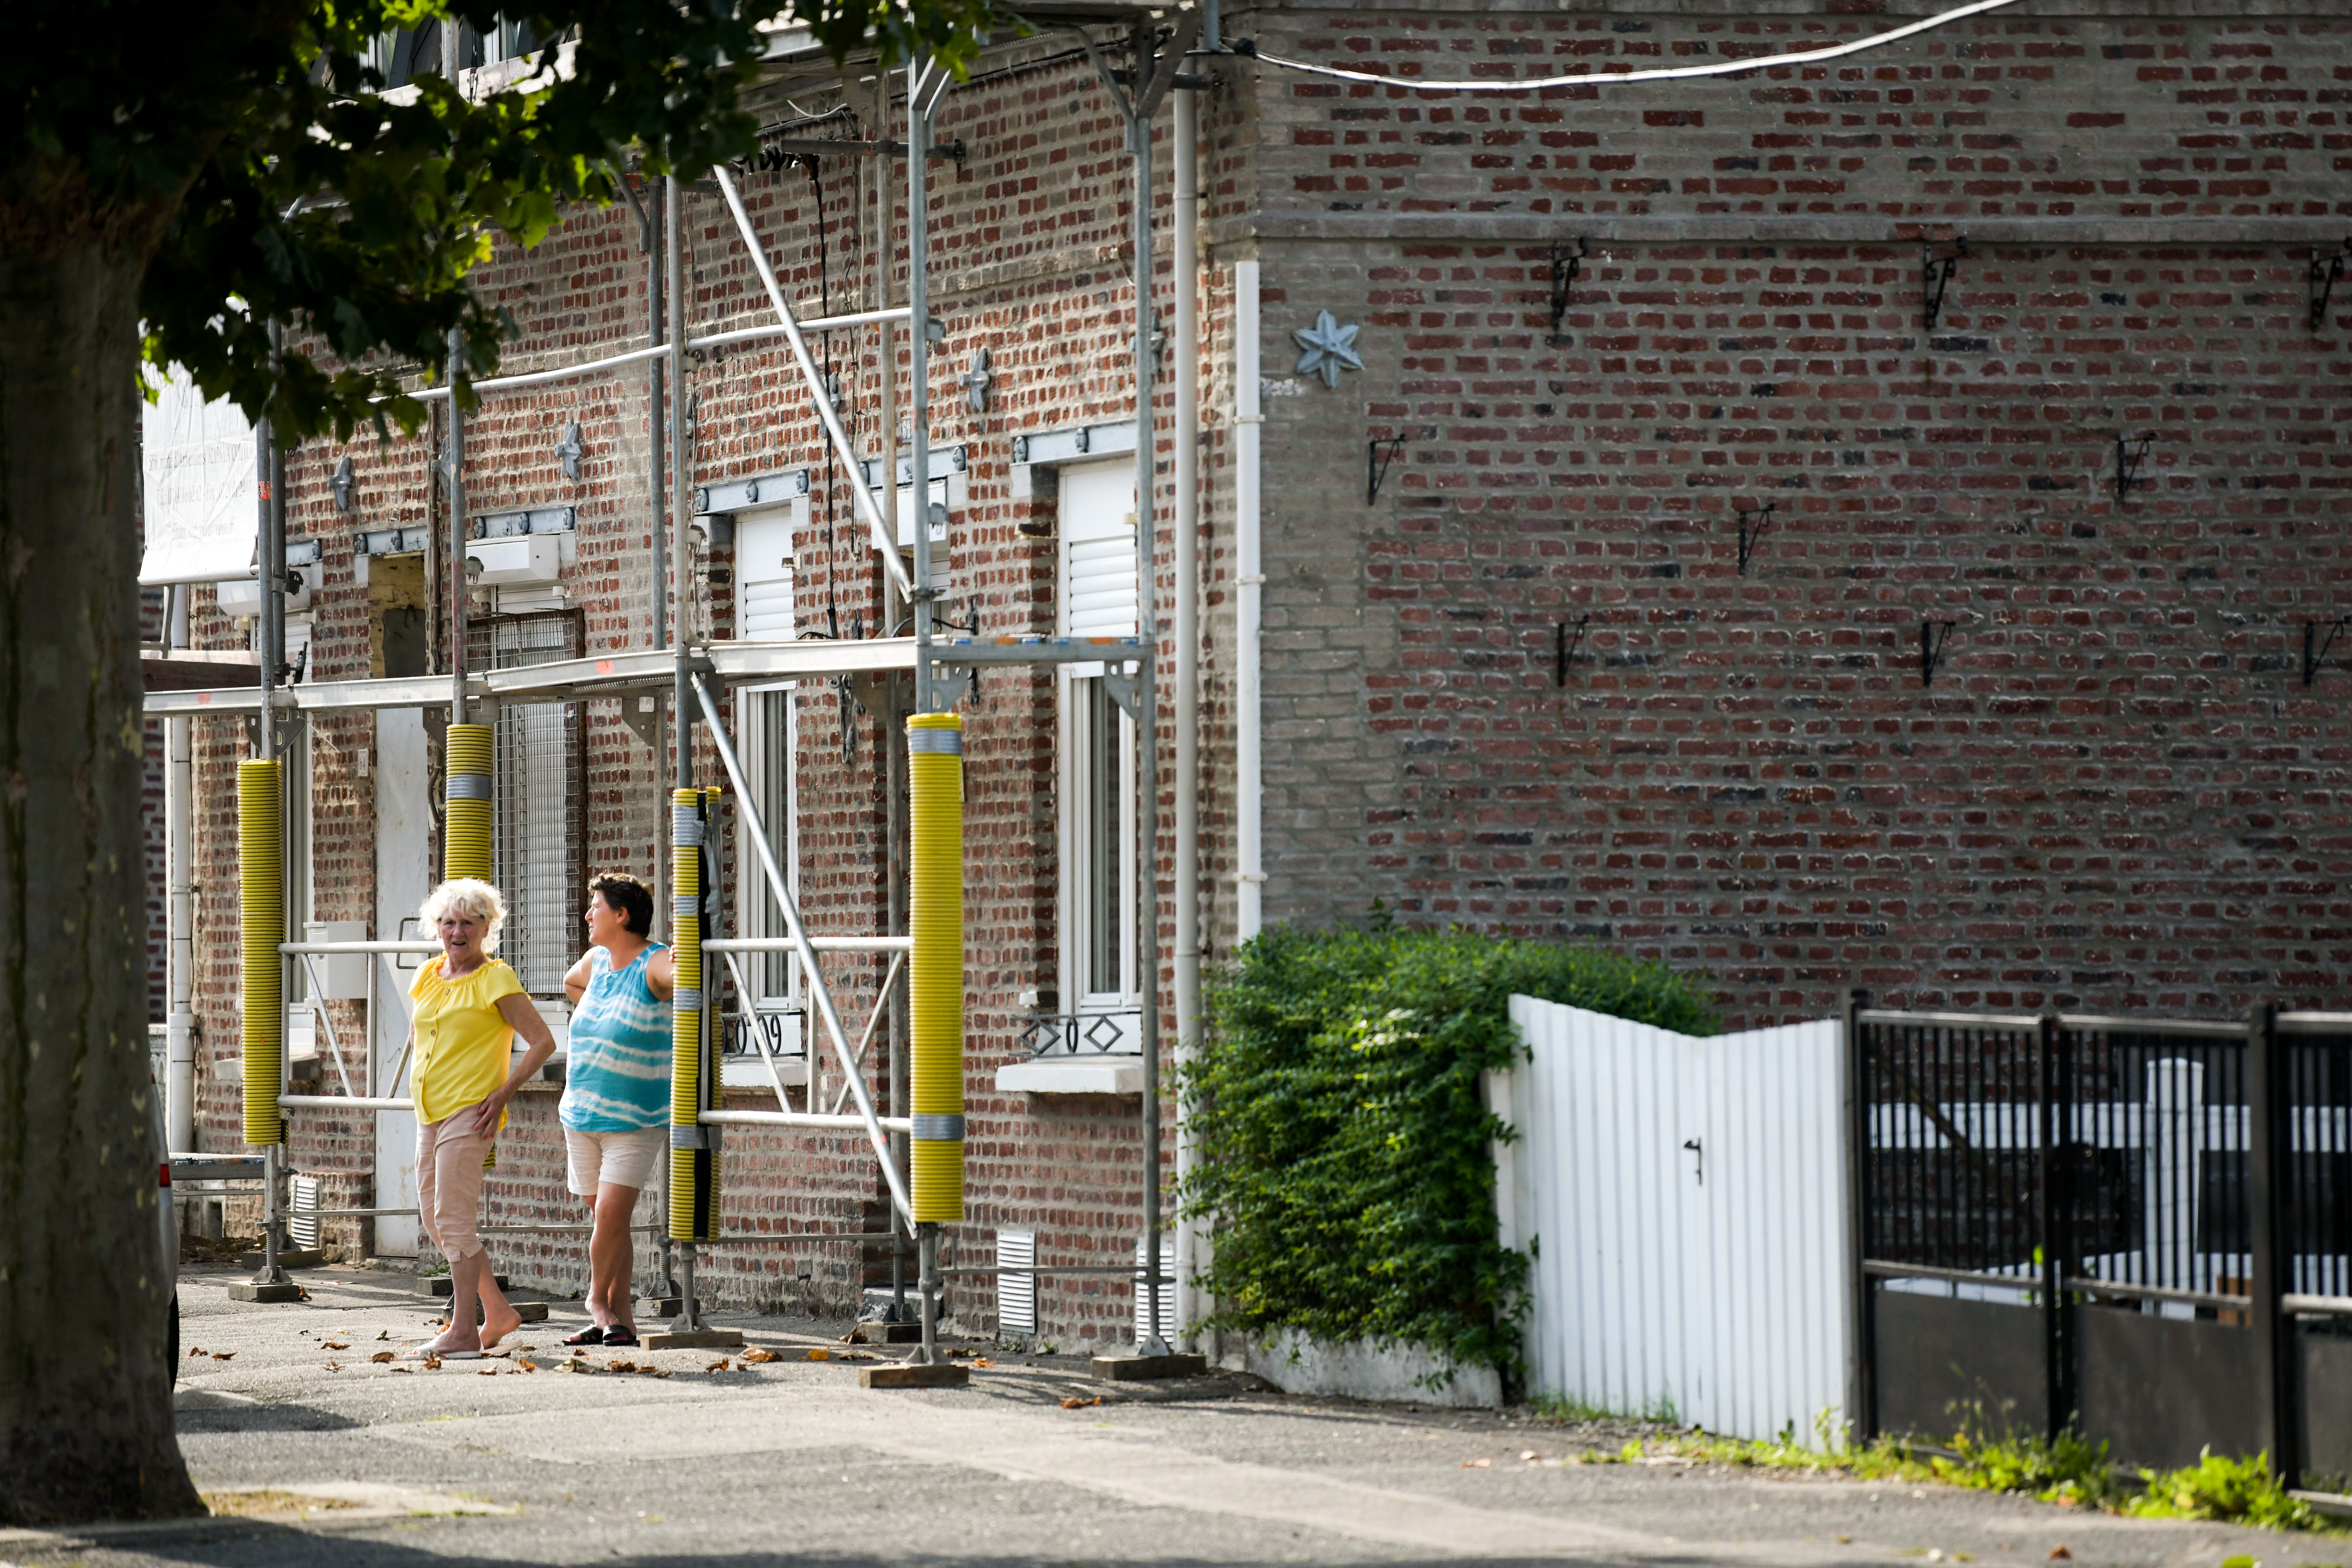 Deux femmes discutent devant une maison en brique, qui a des échaffaudages pour des travaux derénovation.